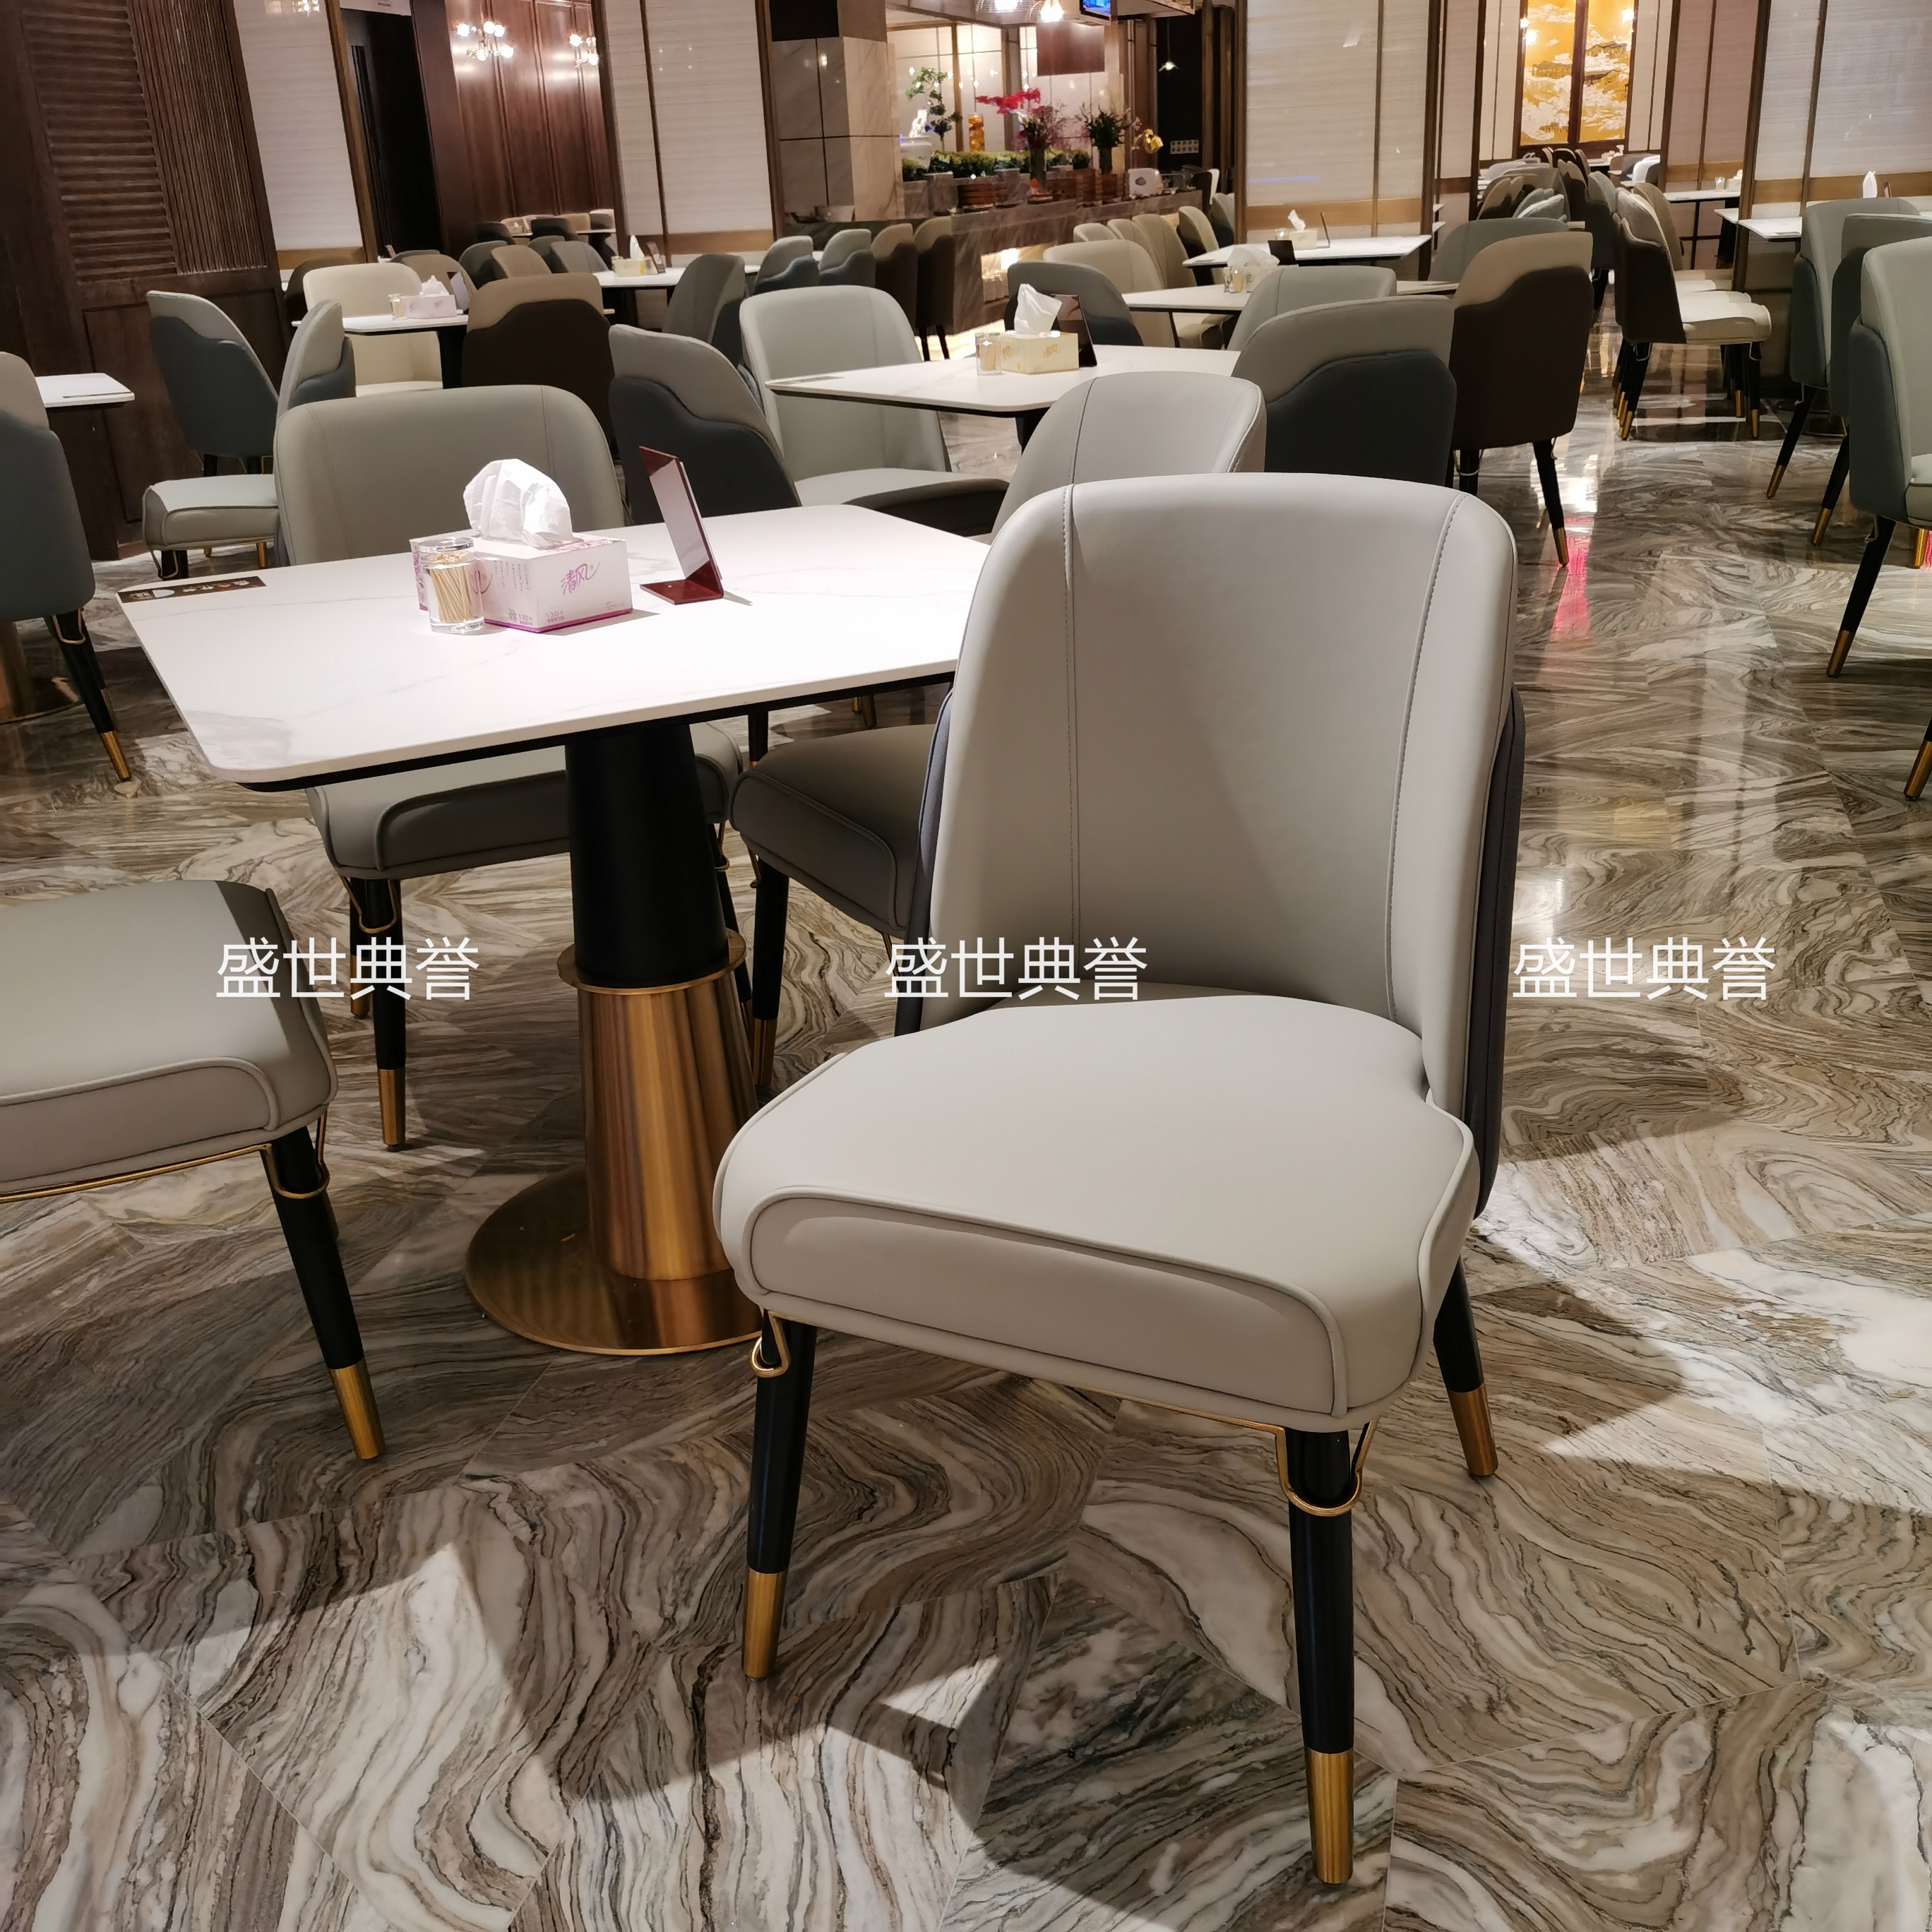 杭州温泉度假酒店餐桌椅宾馆早餐厅实木餐椅饭店西餐厅轻奢实木椅